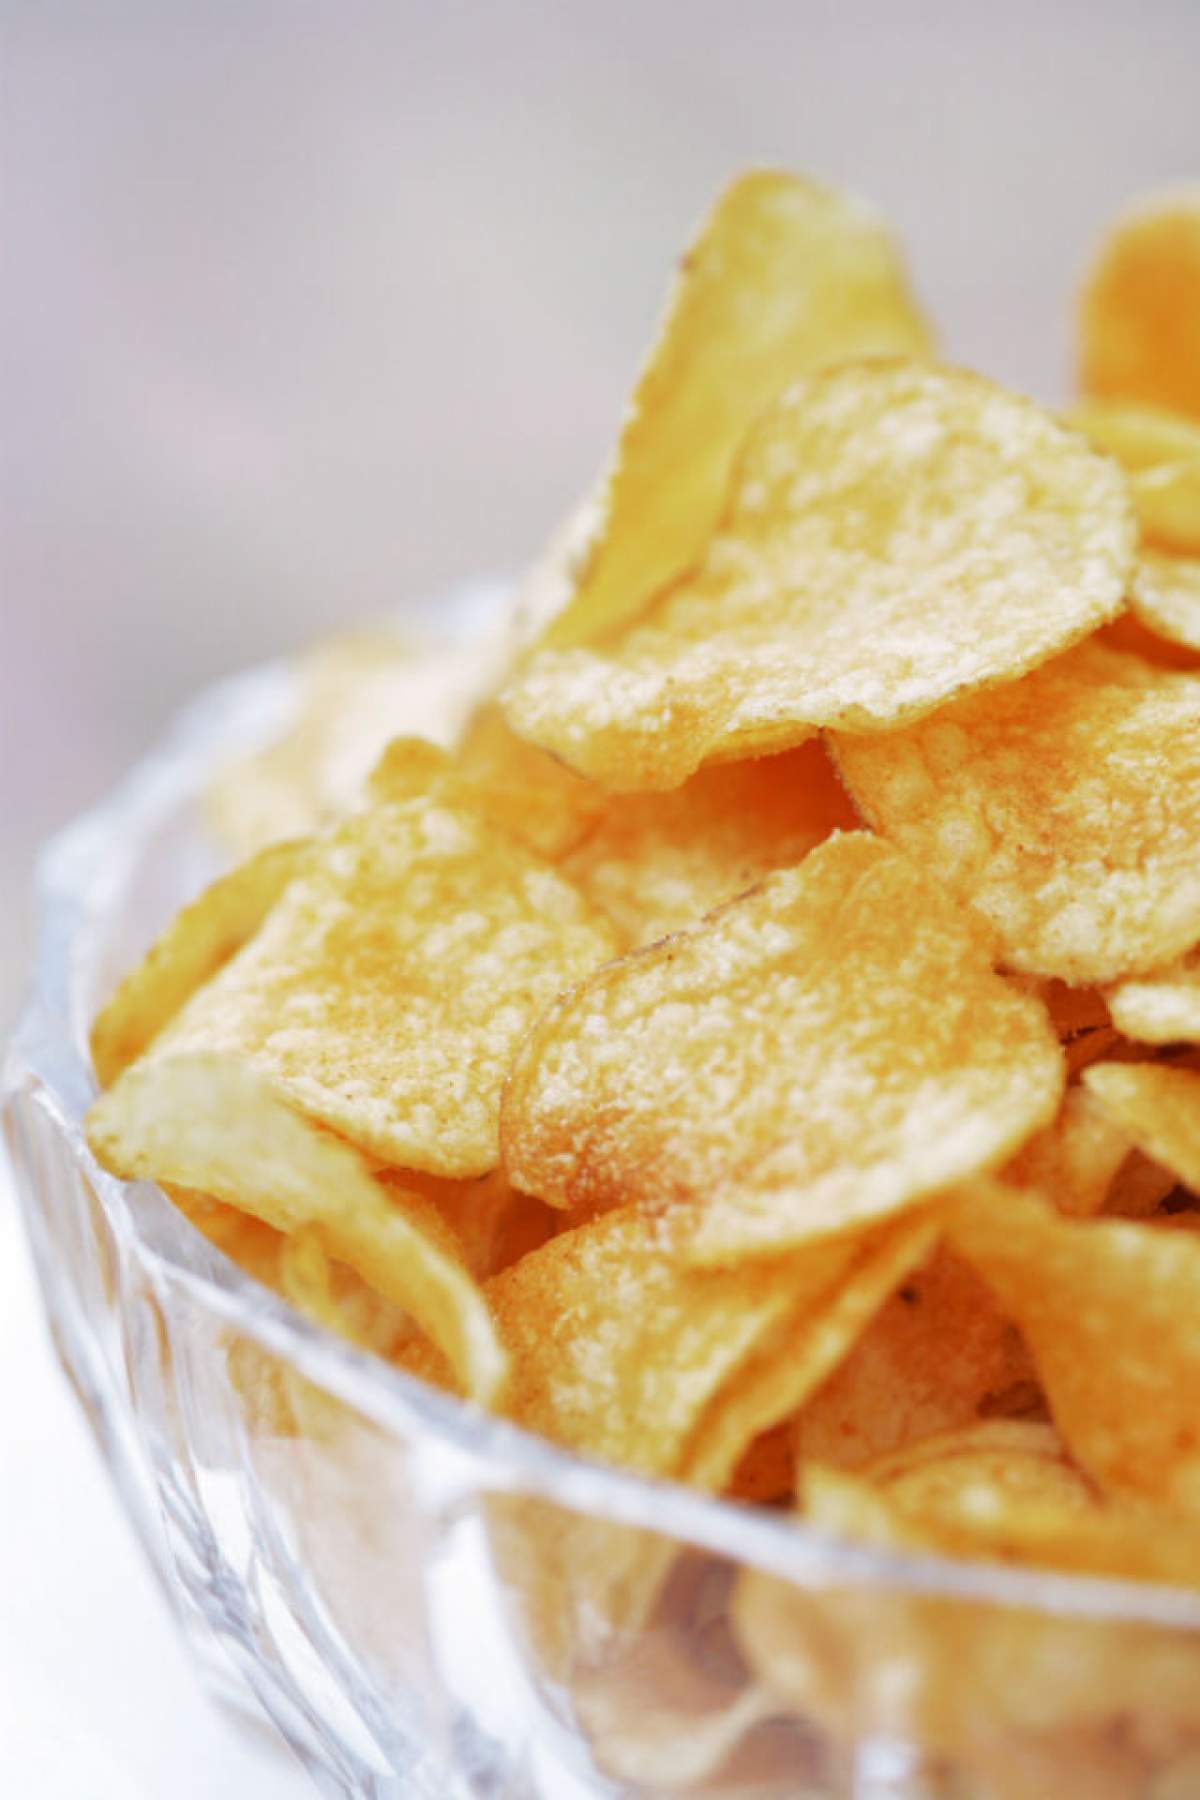 VIDEO UTIL / Cea mai simplă metodă de preparare a chips-urilor de cartofi!